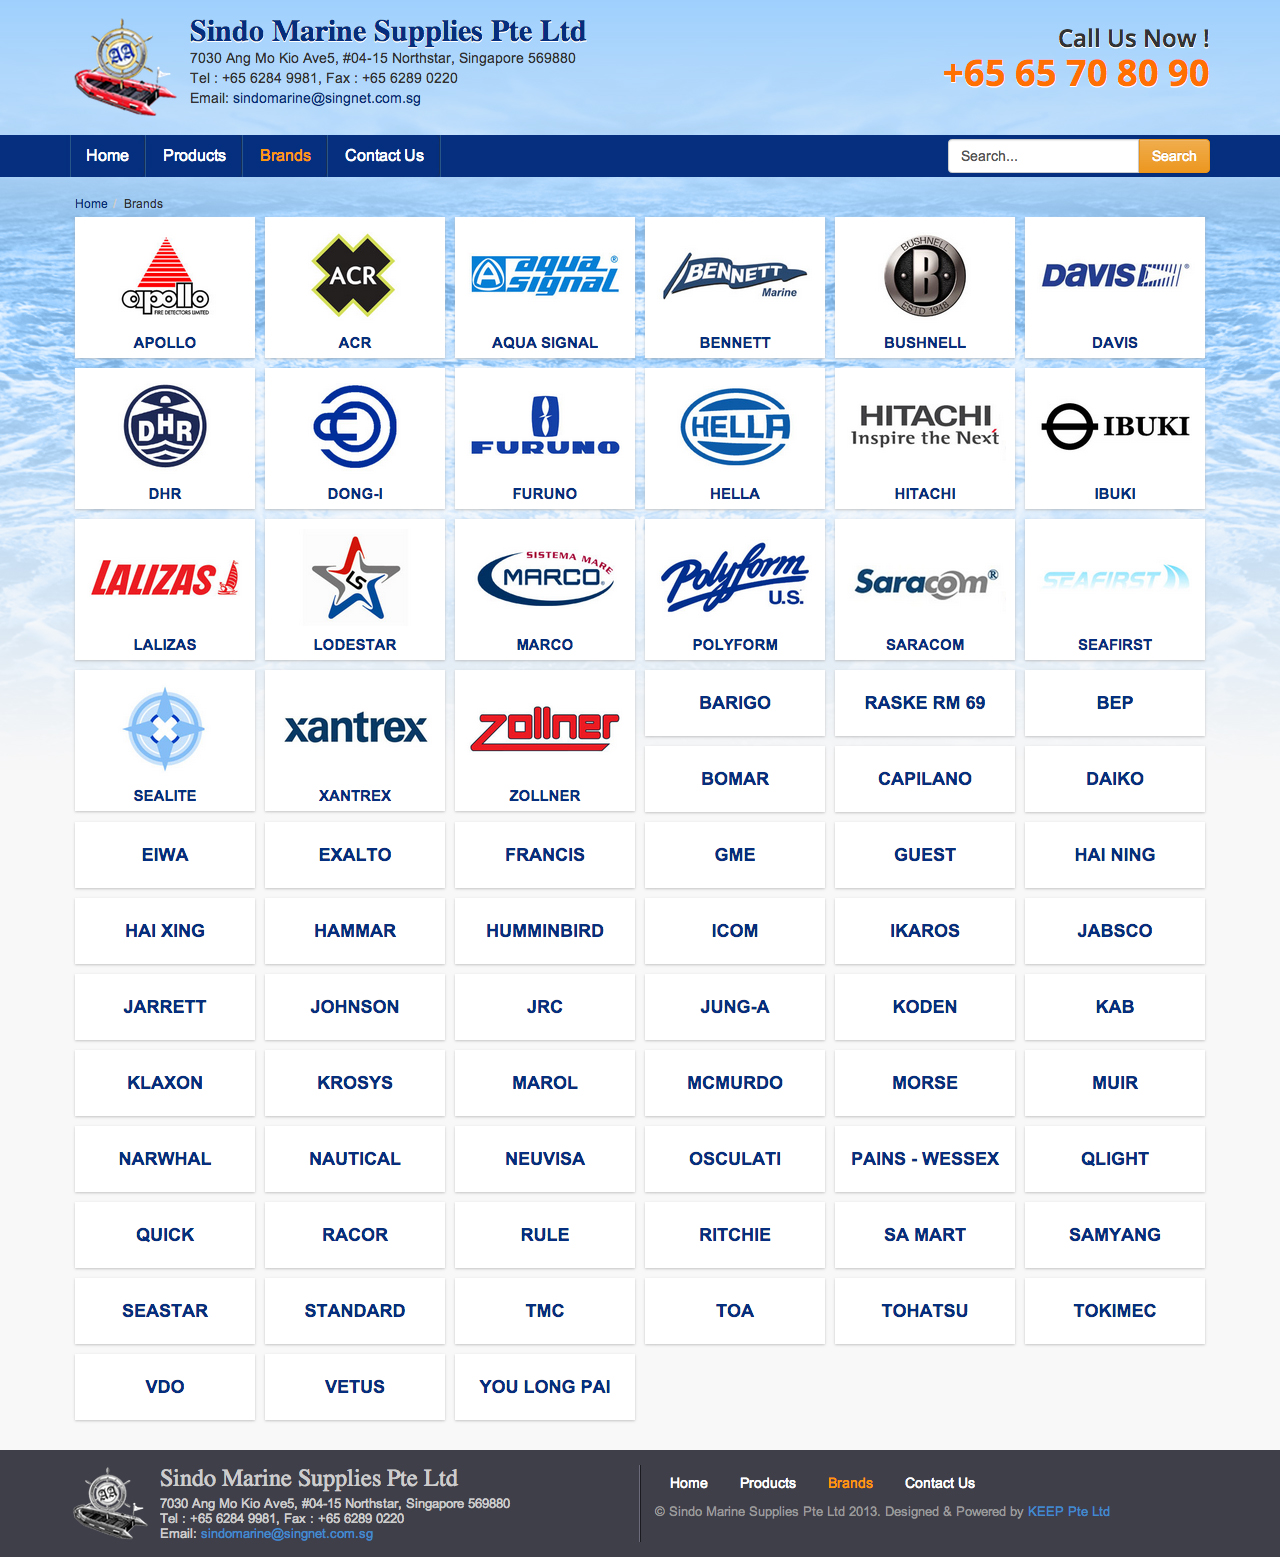 Sindo Marine Supplies Pte Ltd website brands page